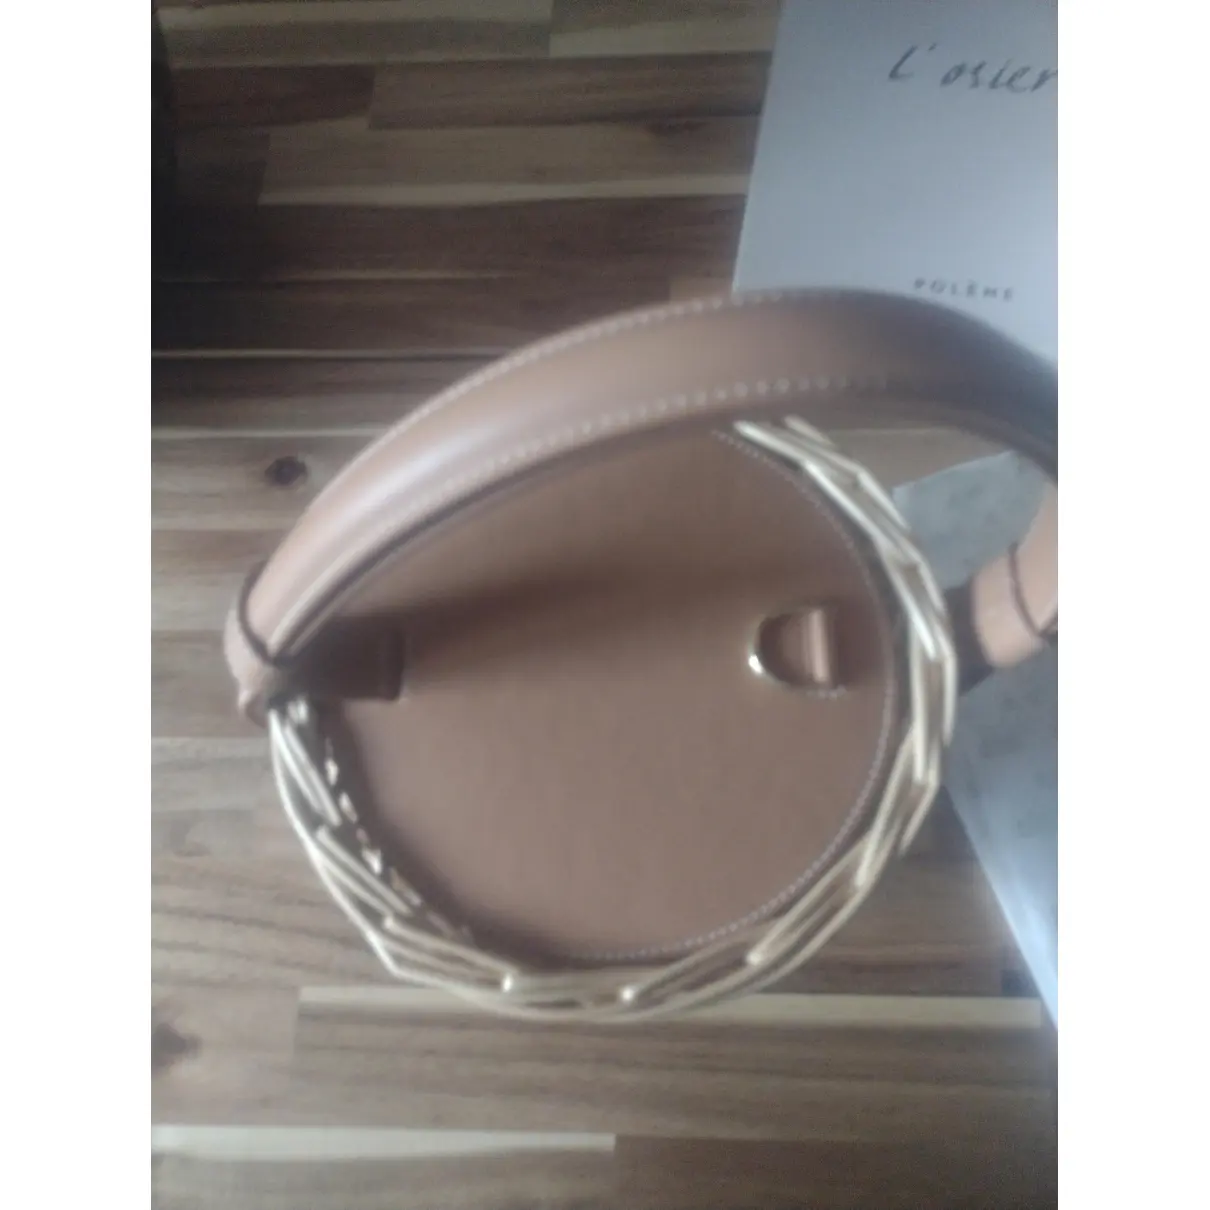 Buy Polene L'osier handbag online